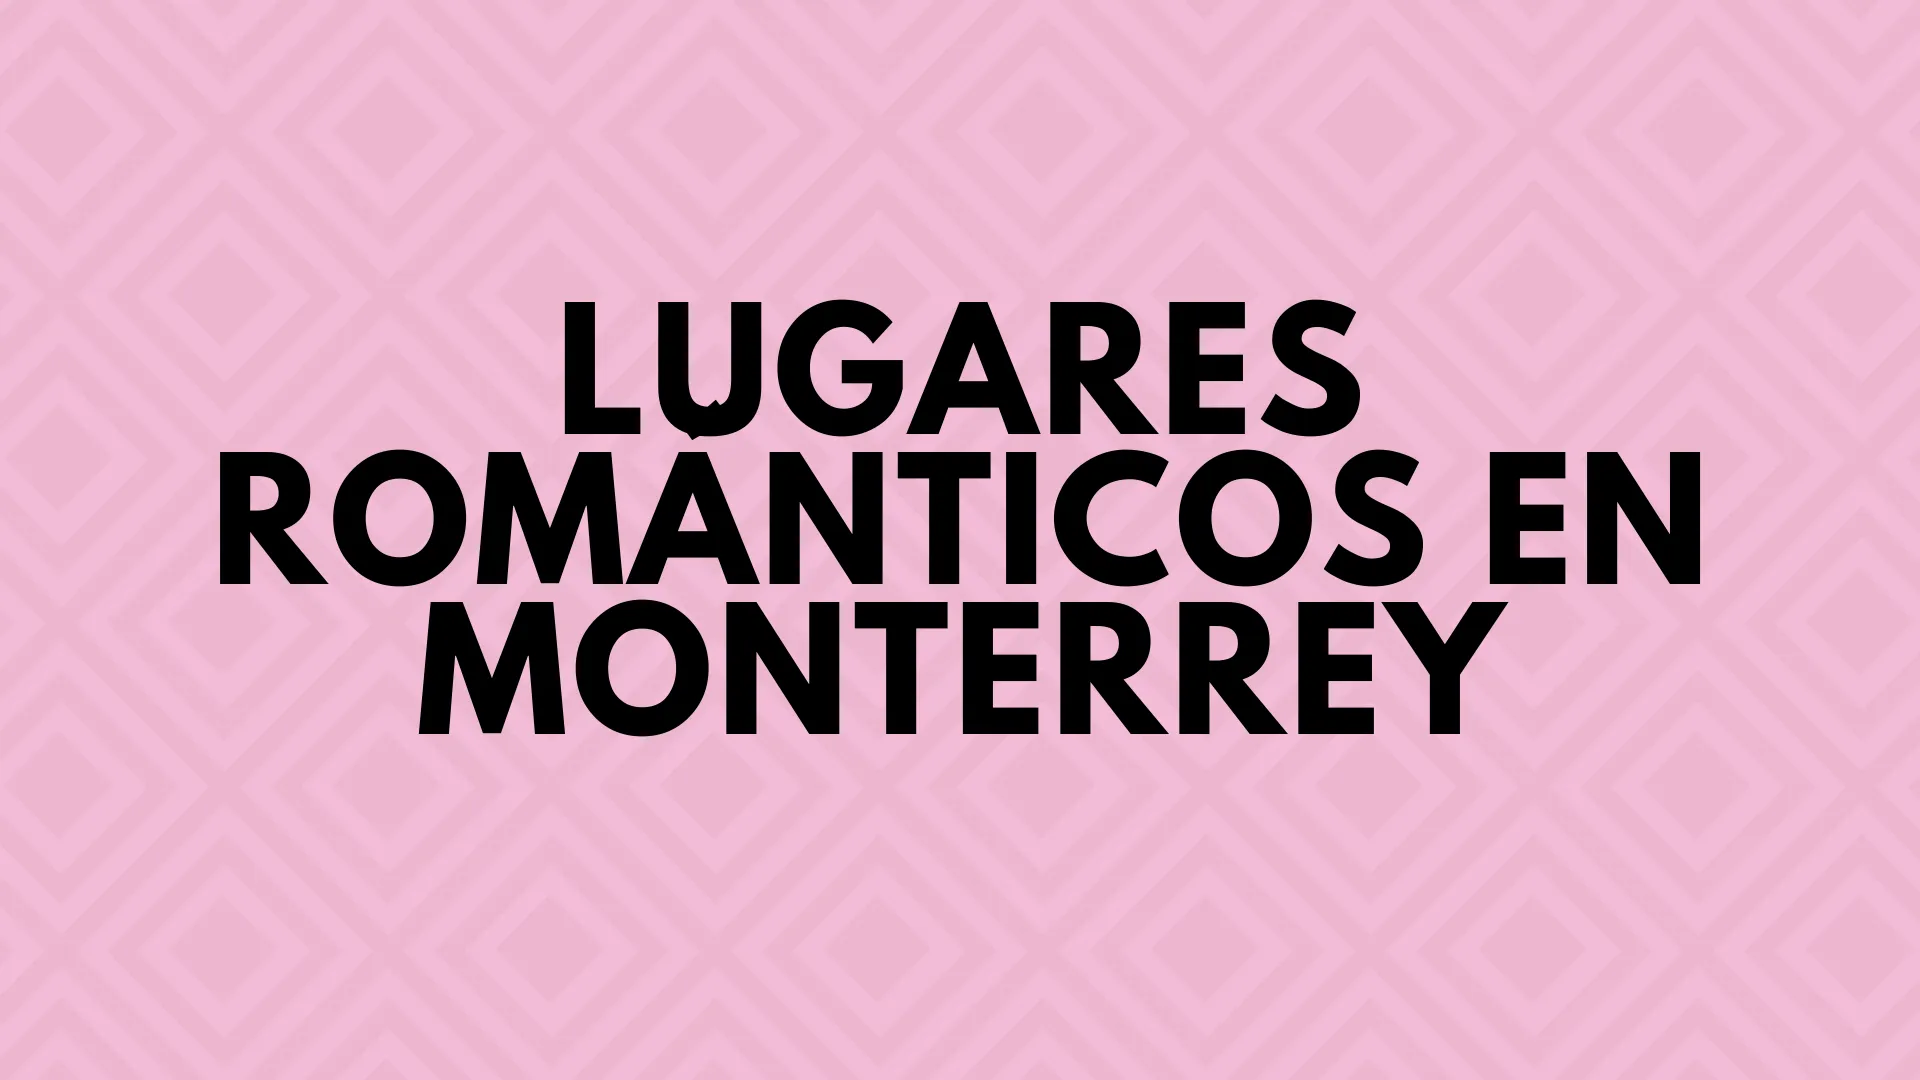 Los lugares mas romanticos que puedes encontrar en Monterrey